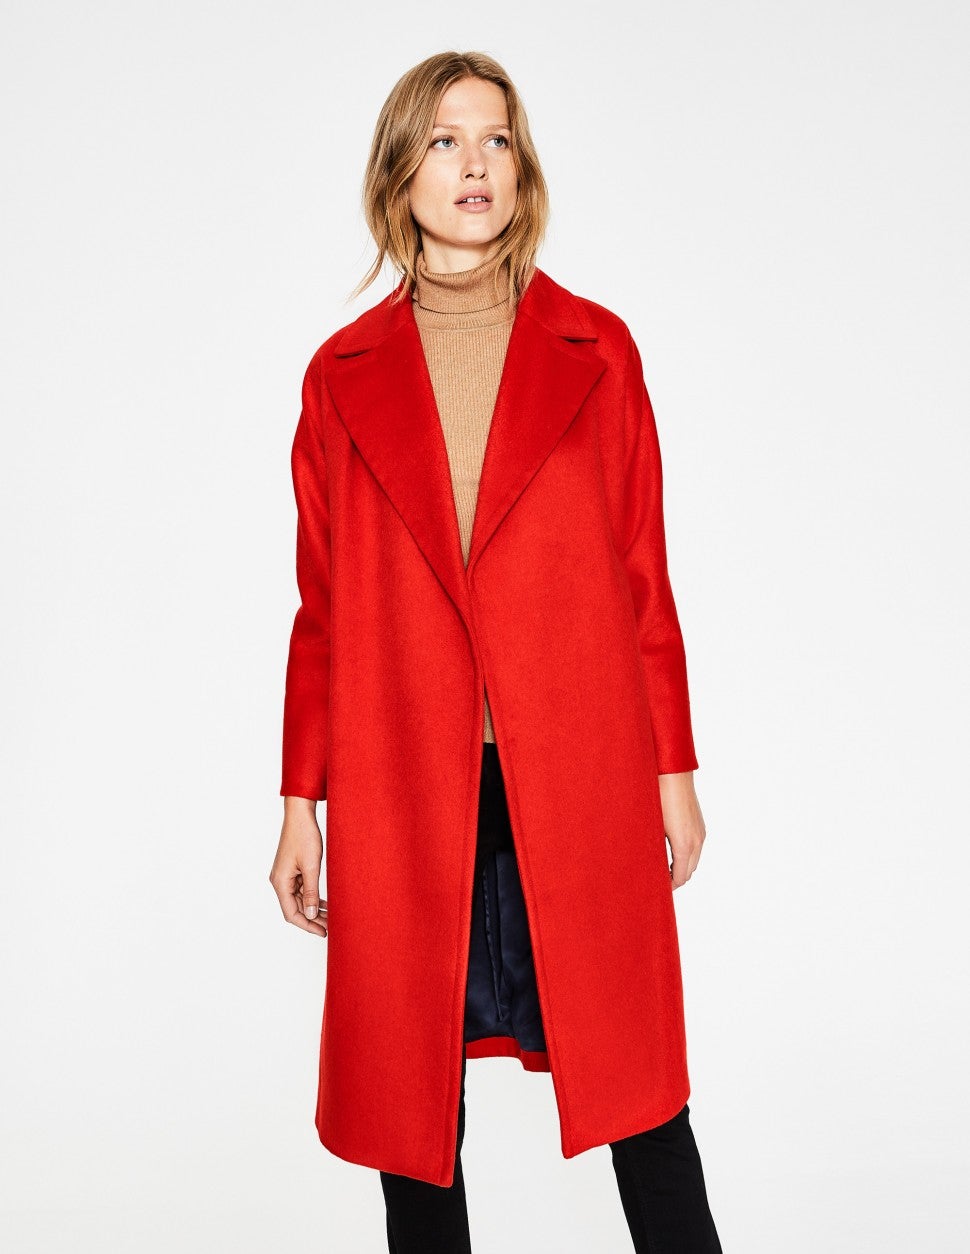 Boden red coat